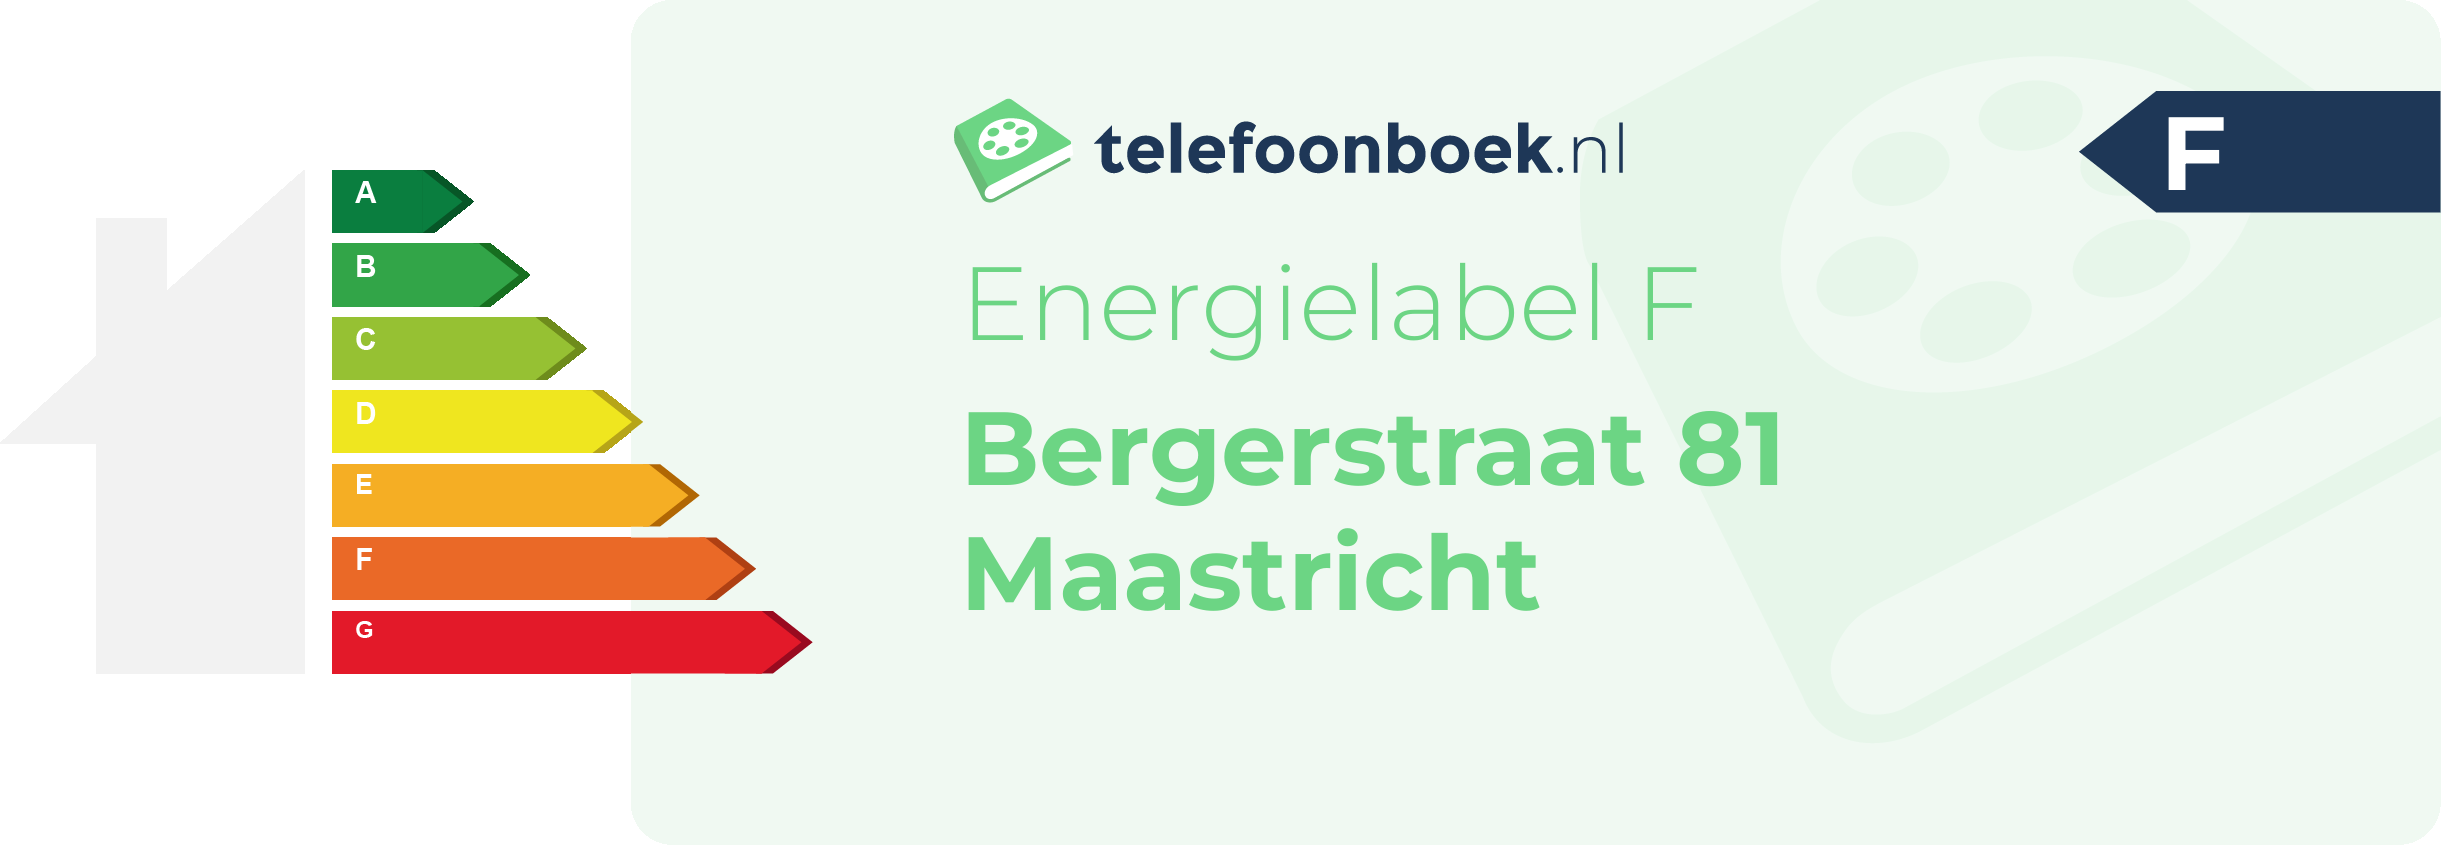 Energielabel Bergerstraat 81 Maastricht